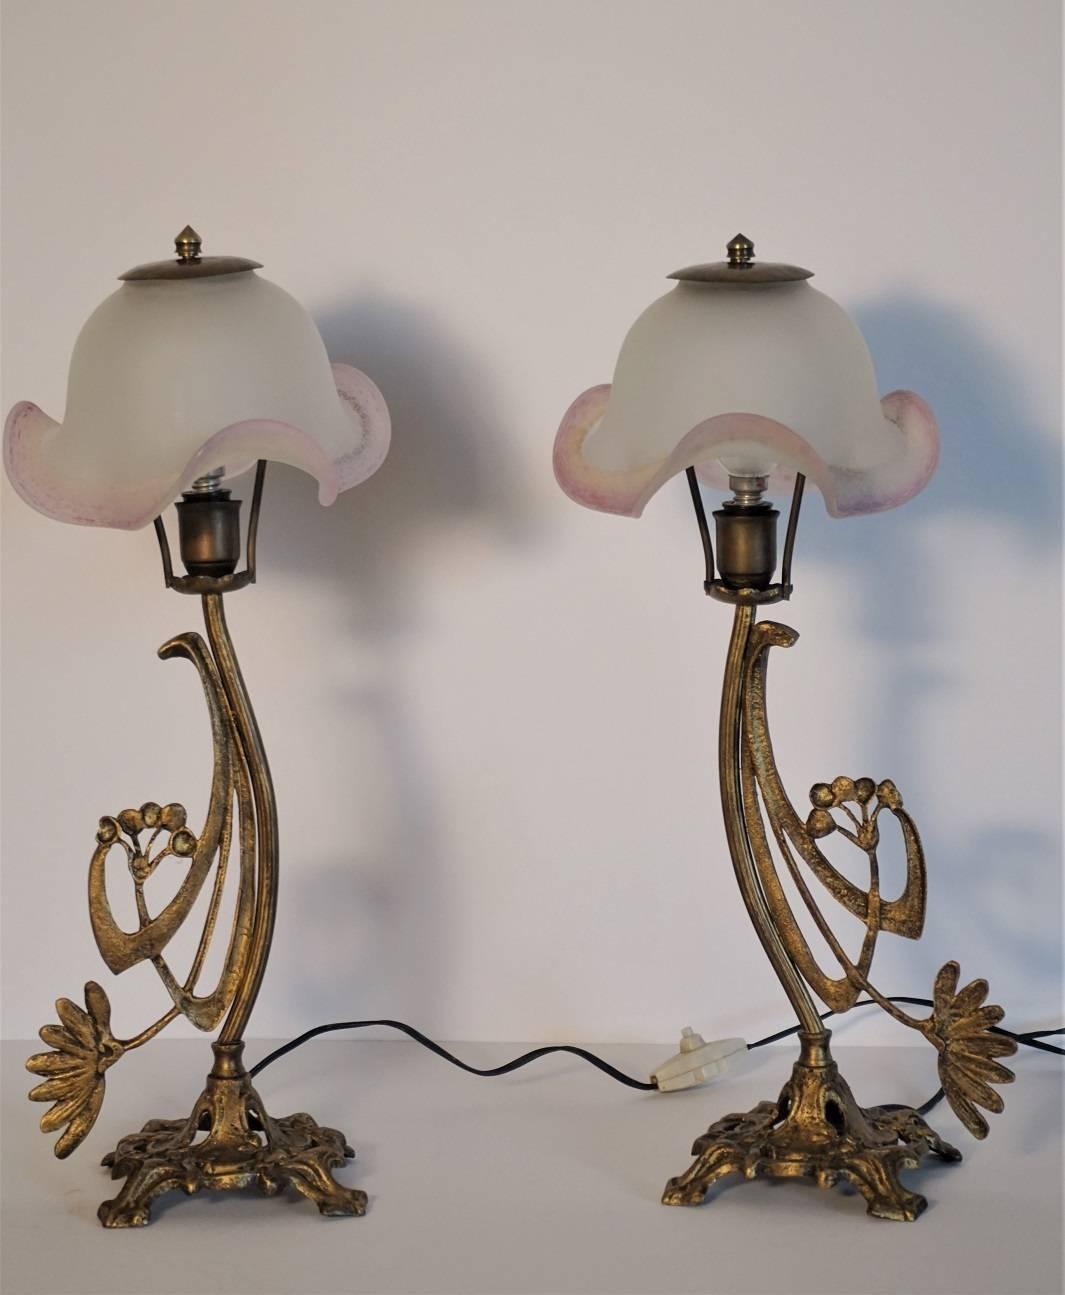 Une belle paire de lampes de table Art déco en bronze décorées de motifs floraux, abat-jour en verre d'art en forme de tulipe, vers 1930.
Chaque lampe est équipée d'une douille E14.
Mesure : Hauteur 17 in (43 cm)
Diamètre de 6,50 pouces (16